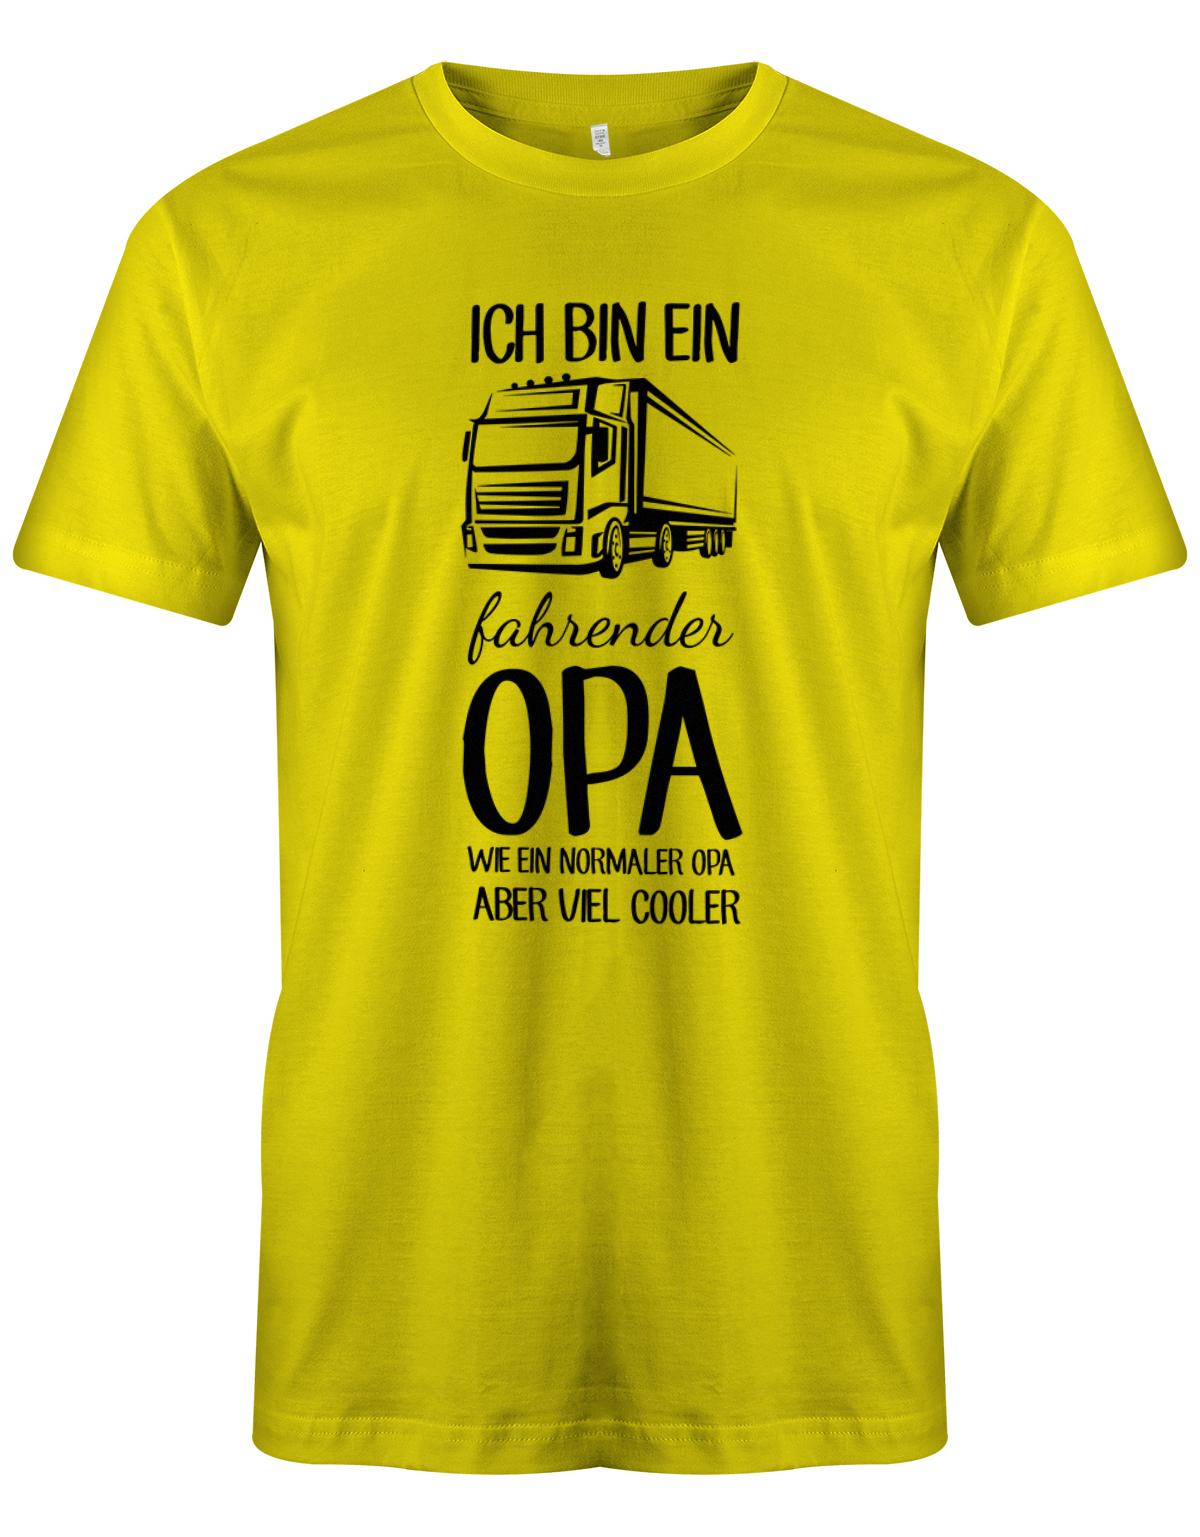 Ich bin ein LKW fahrender Opa wie ein normaler Opa aber viel cooler - Kraftfahrer - Herren T-Shirt Gelb